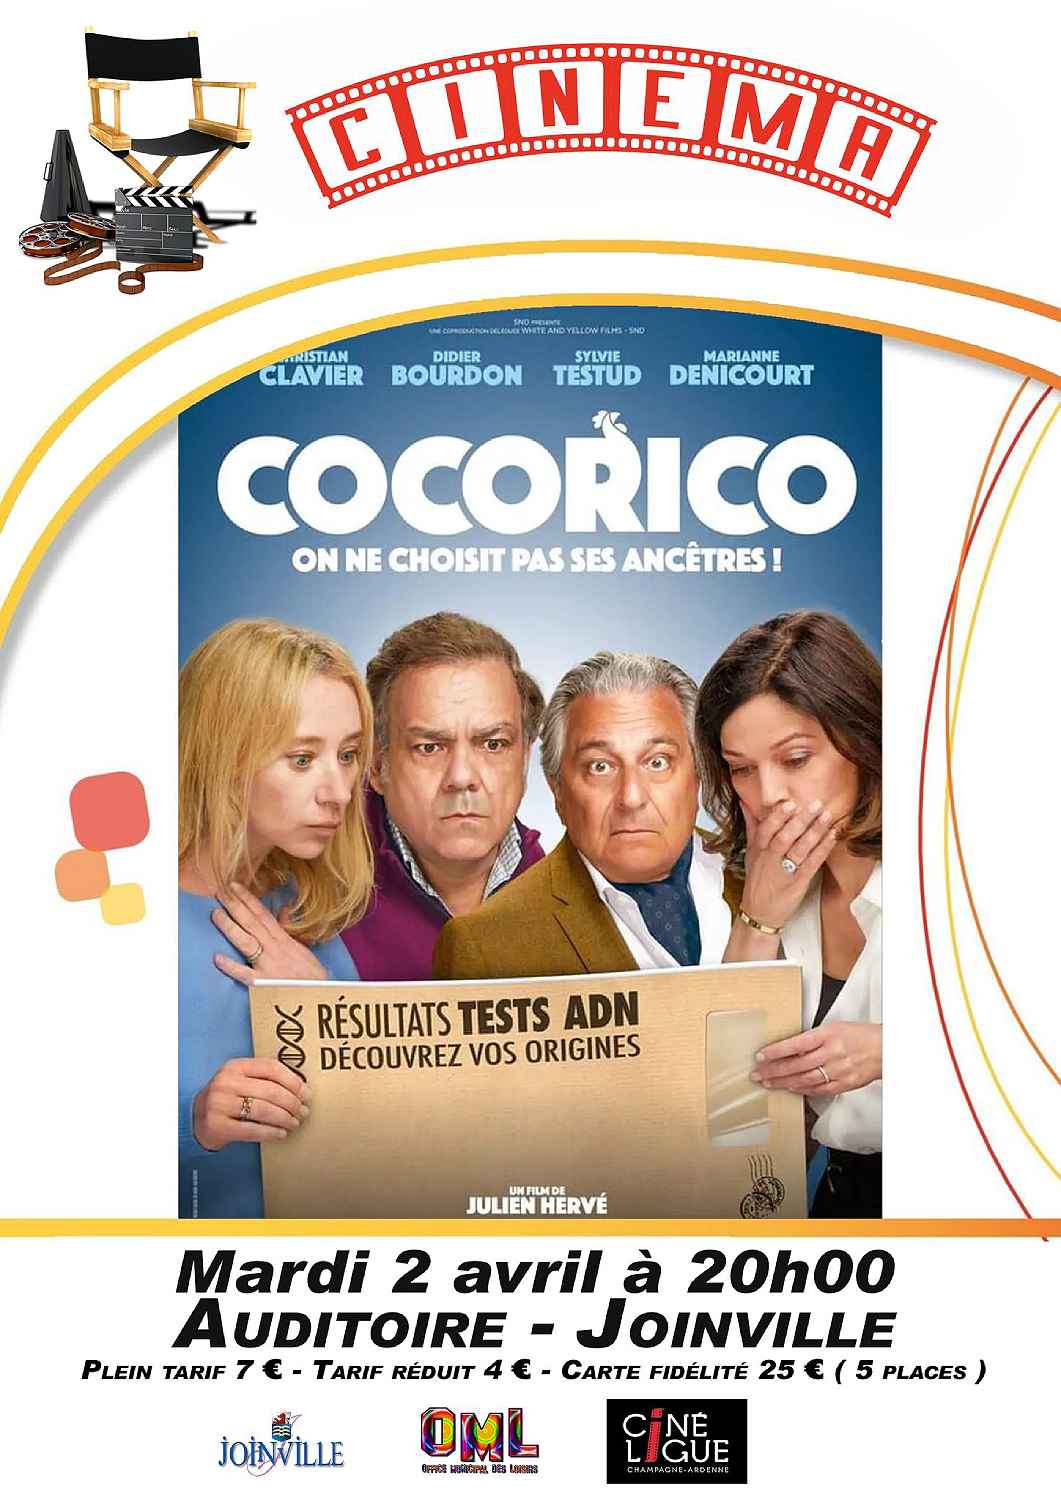 CINEMA AUDITOIRE DE JOINVILLE "COCORICO"